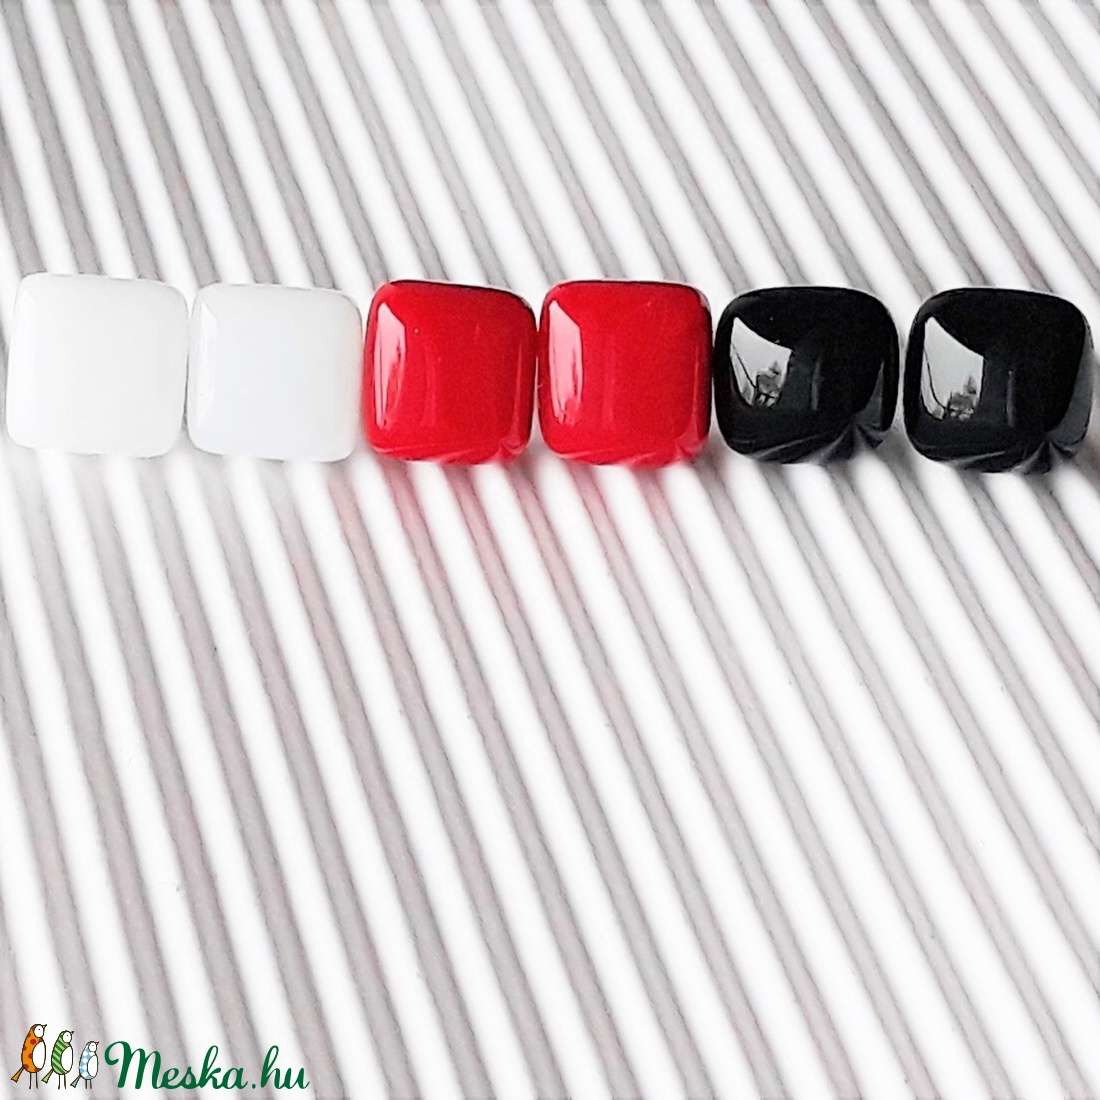 Klasszikus fekete-fehér-piros üveg kocka fülbevaló csomag orvosi fém alapon , minimal, trendi, üvegékszer szett - ékszer - fülbevaló - pötty fülbevaló - Meska.hu